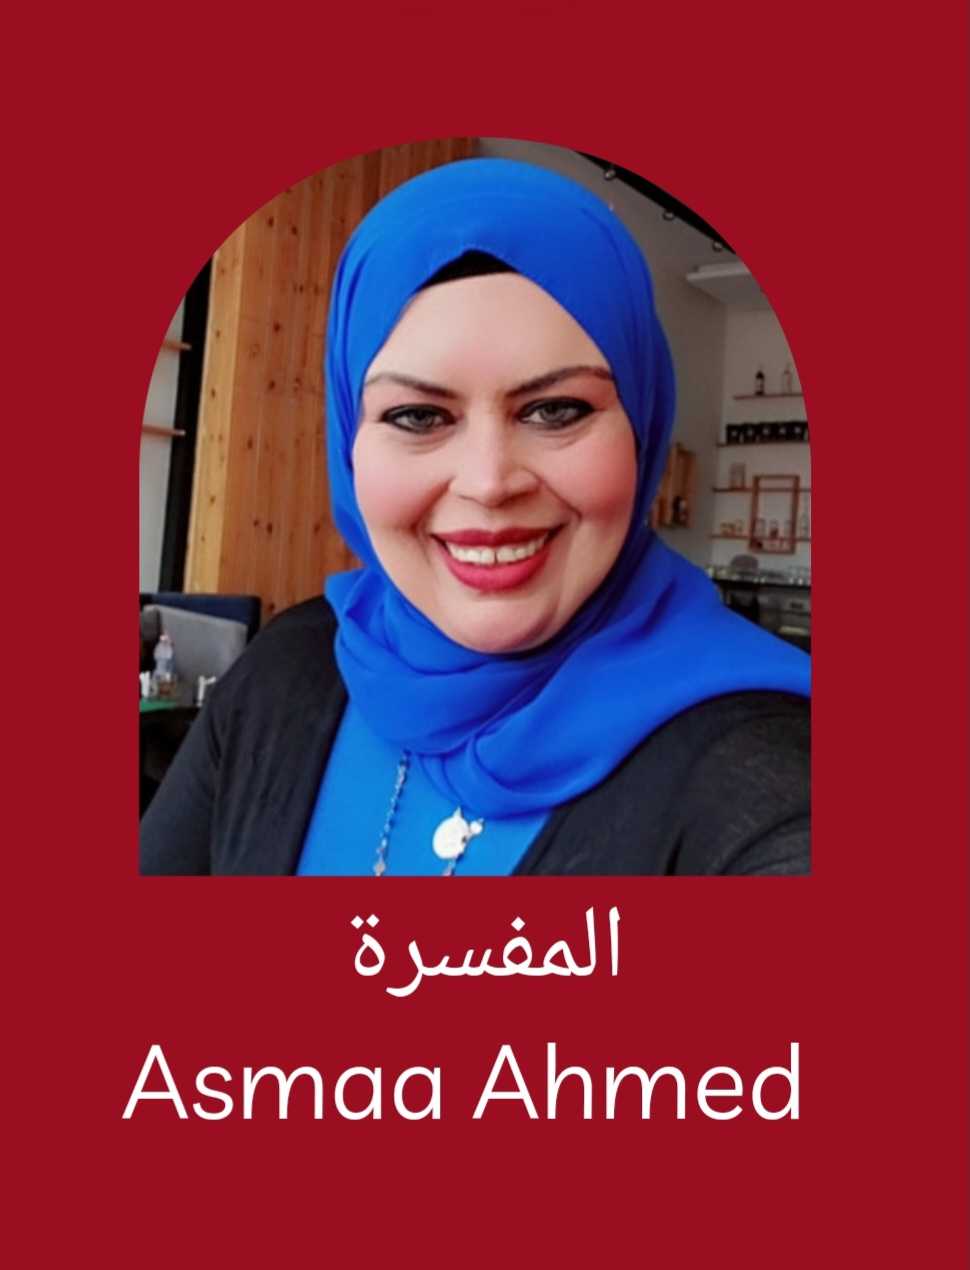 Asmaa Ahmed